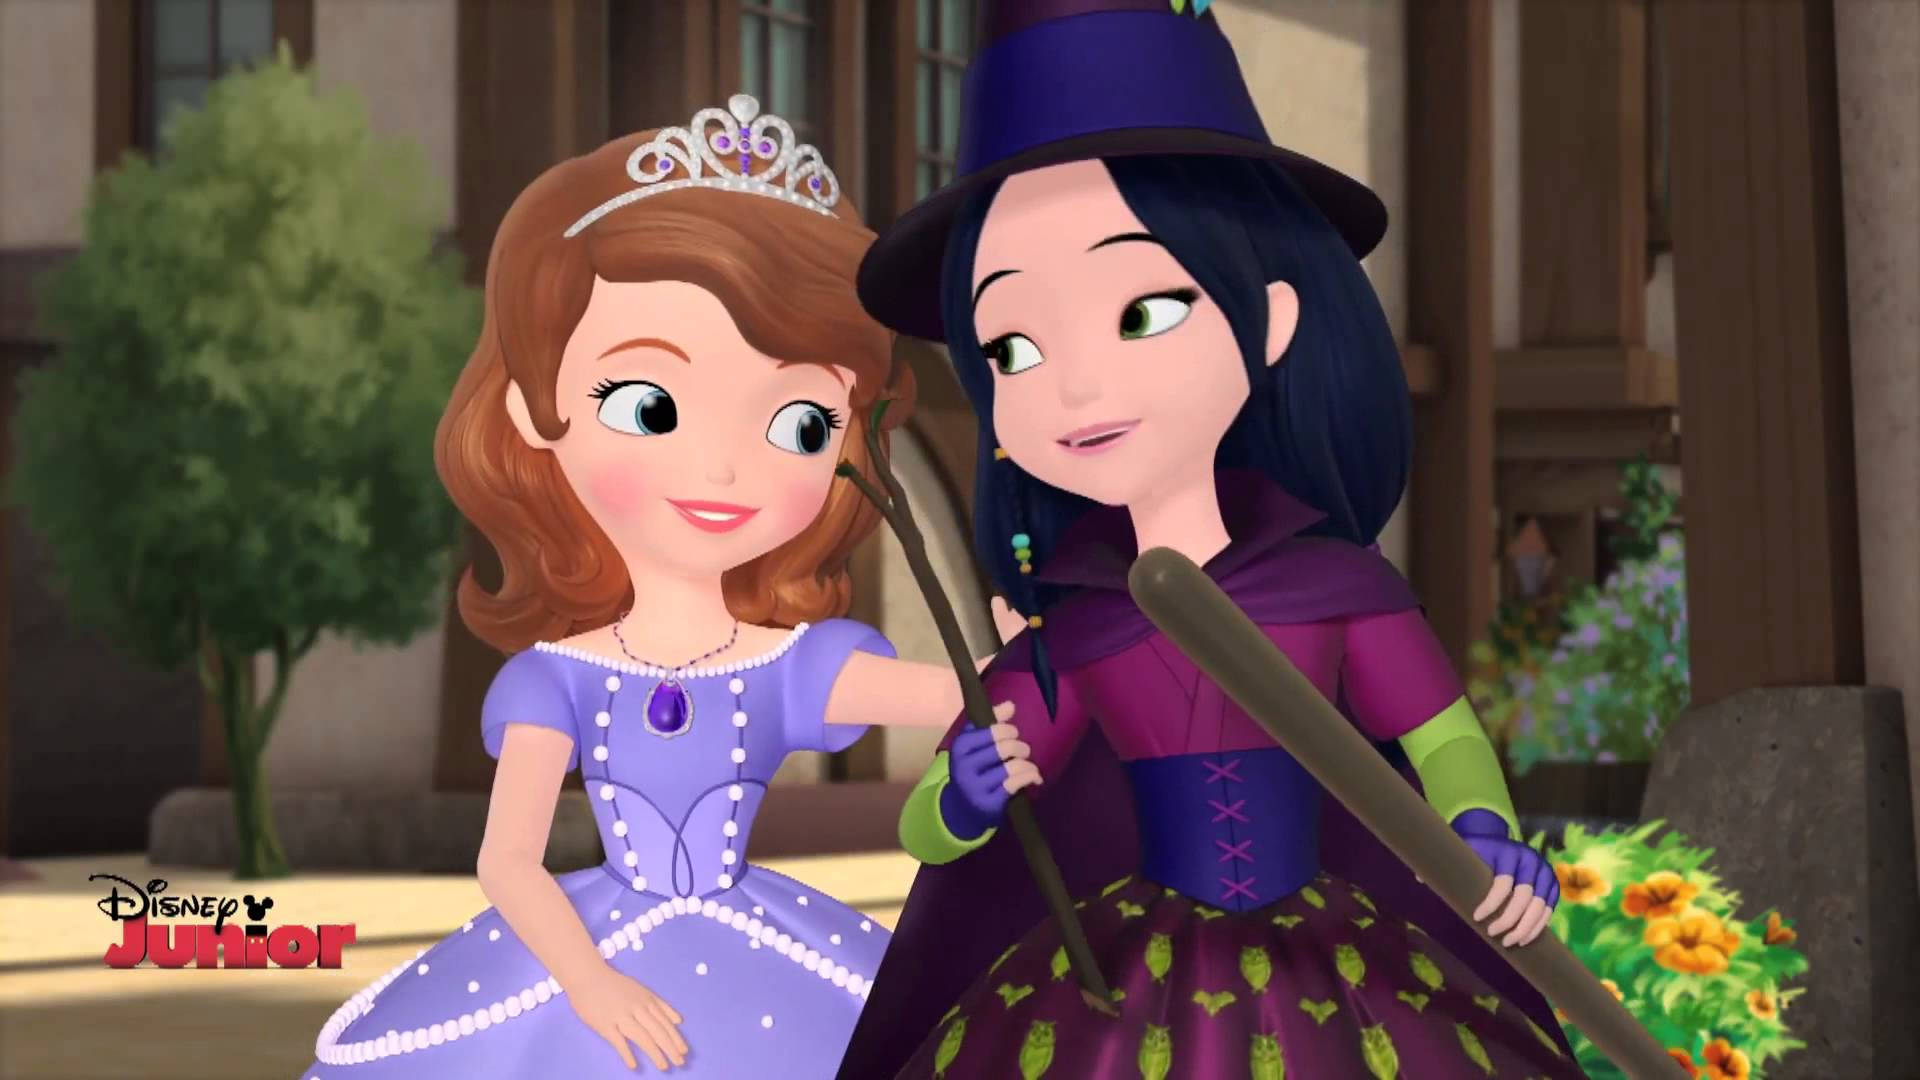 Princess Sofia With Her Witch Friend